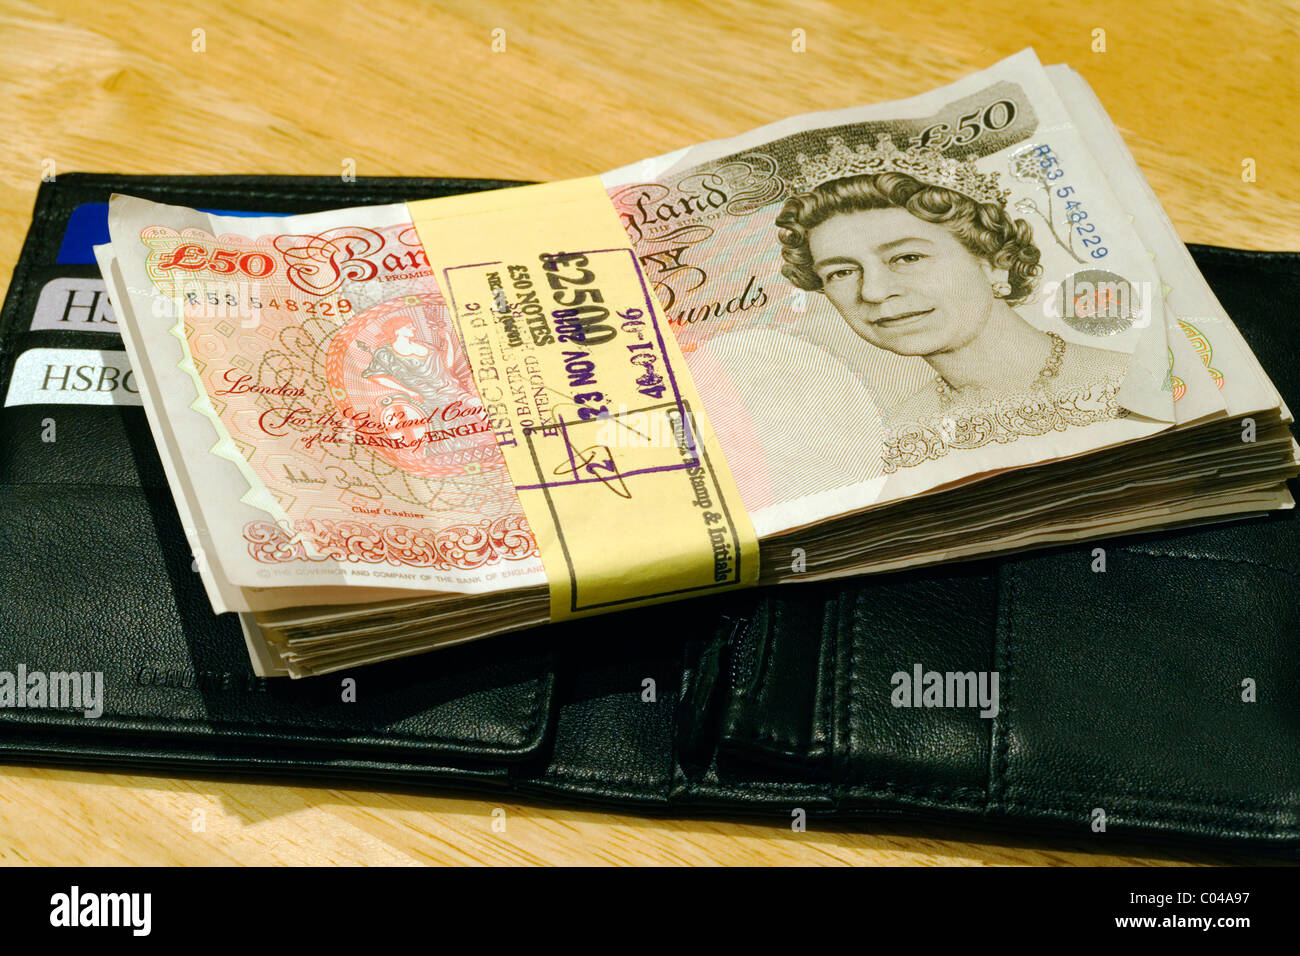 £50 note. Grande grappolo della sterlina inglese cinquanta sterline denaro in valuta, London, England, Regno Unito, Europa Foto Stock